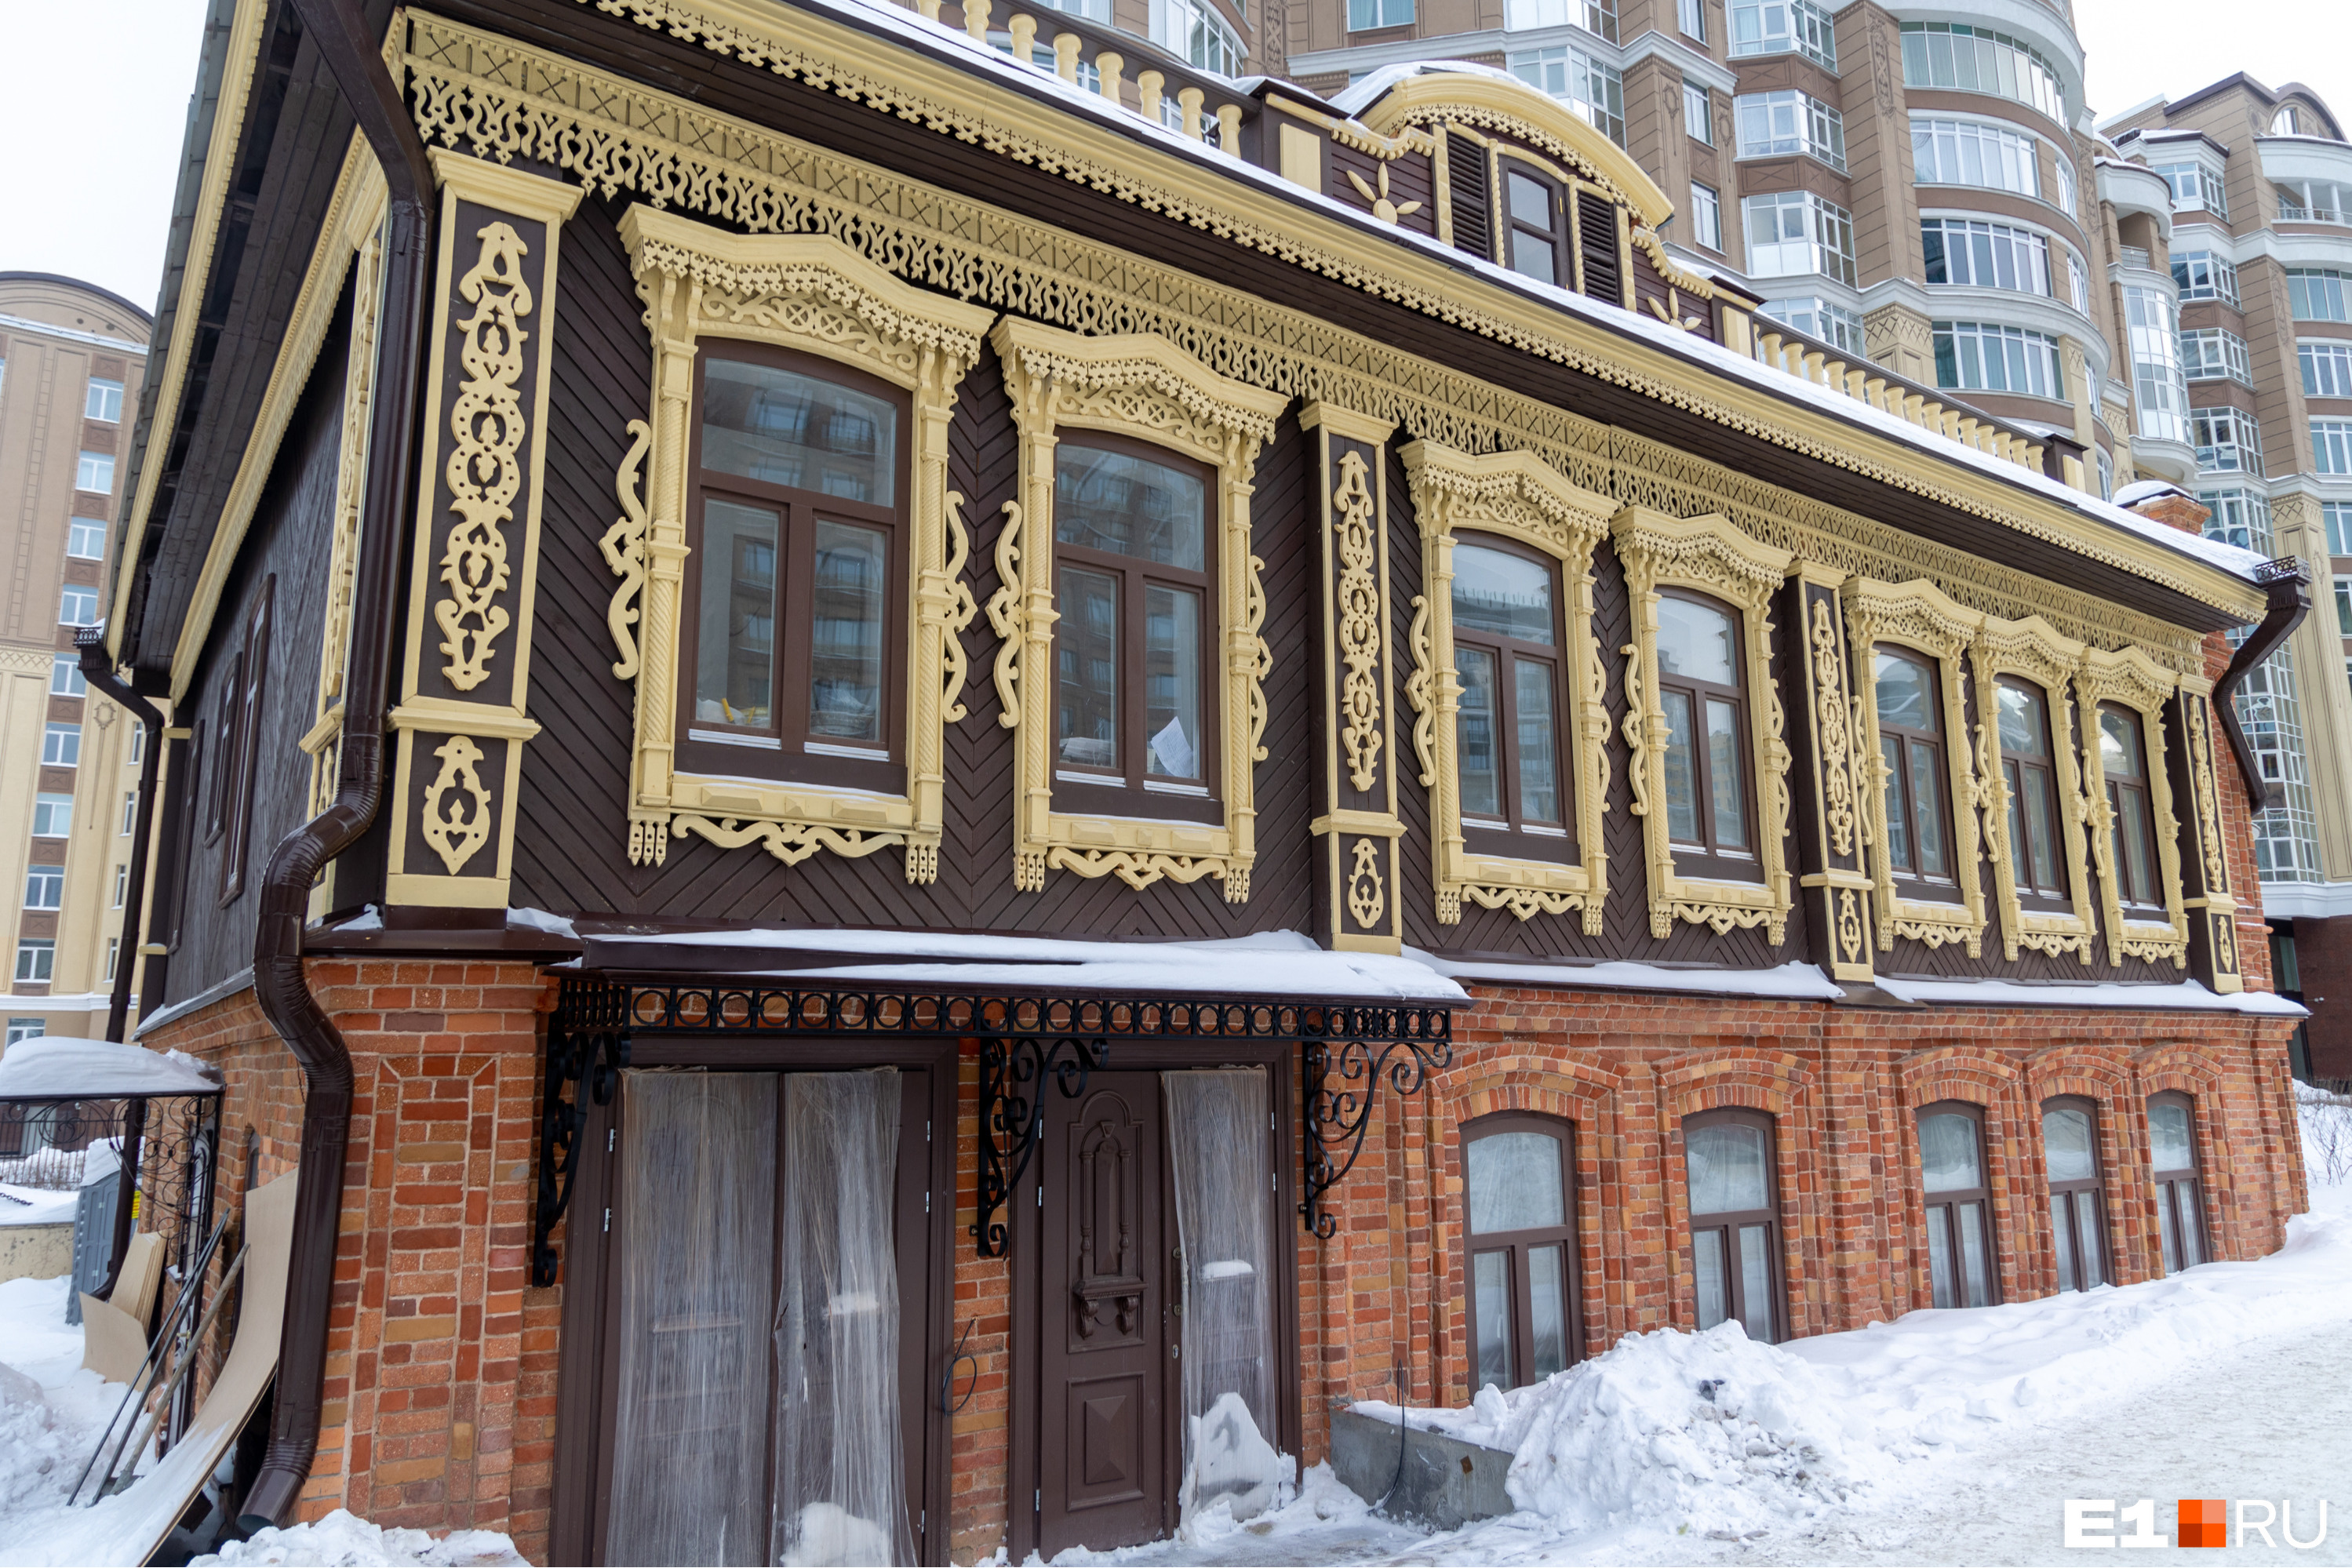 Уральский олигарх вложился в старинный дом в центре Екатеринбурга. Что внутри?